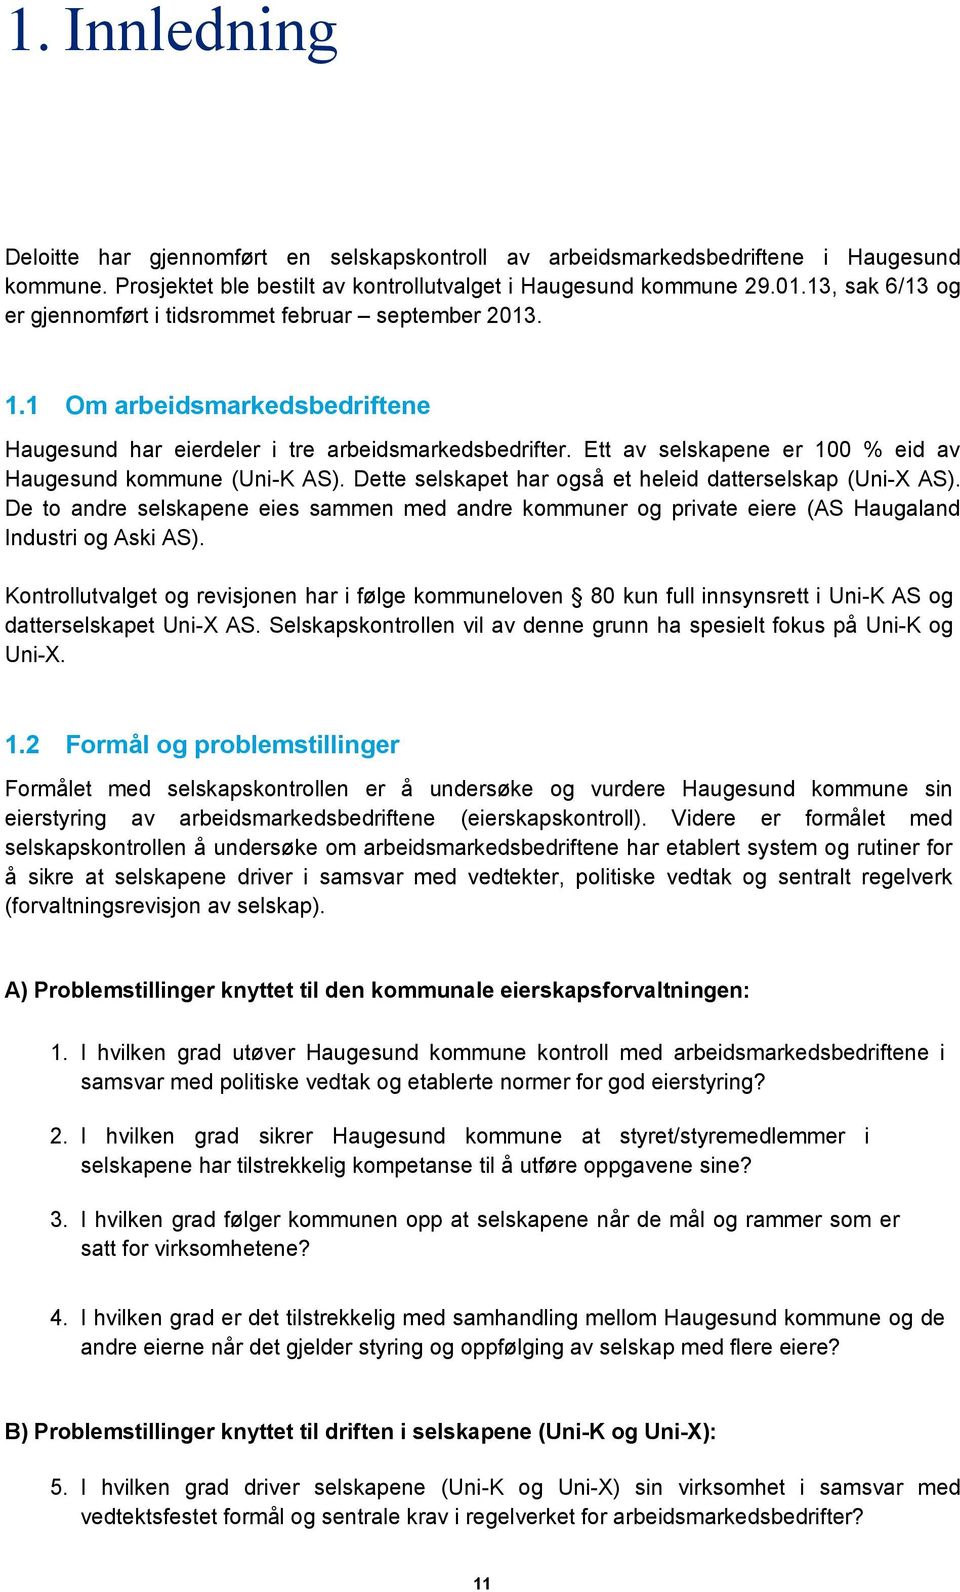 Ett av selskapene er 100 % eid av Haugesund kommune (Uni-K AS). Dette selskapet har også et heleid datterselskap (Uni-X AS).